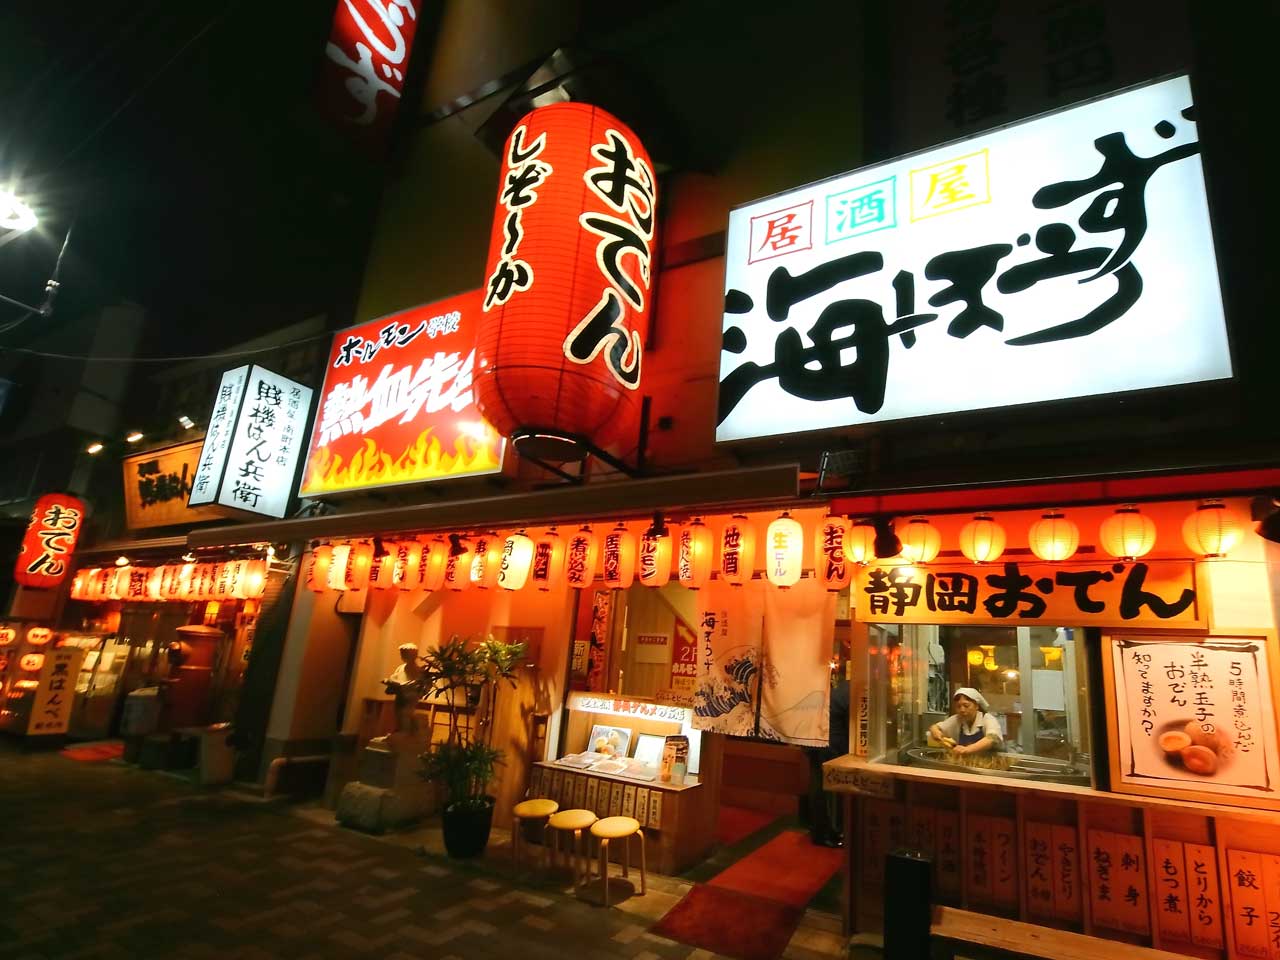 静岡おでんの人気店。静岡で居酒屋を経営しています